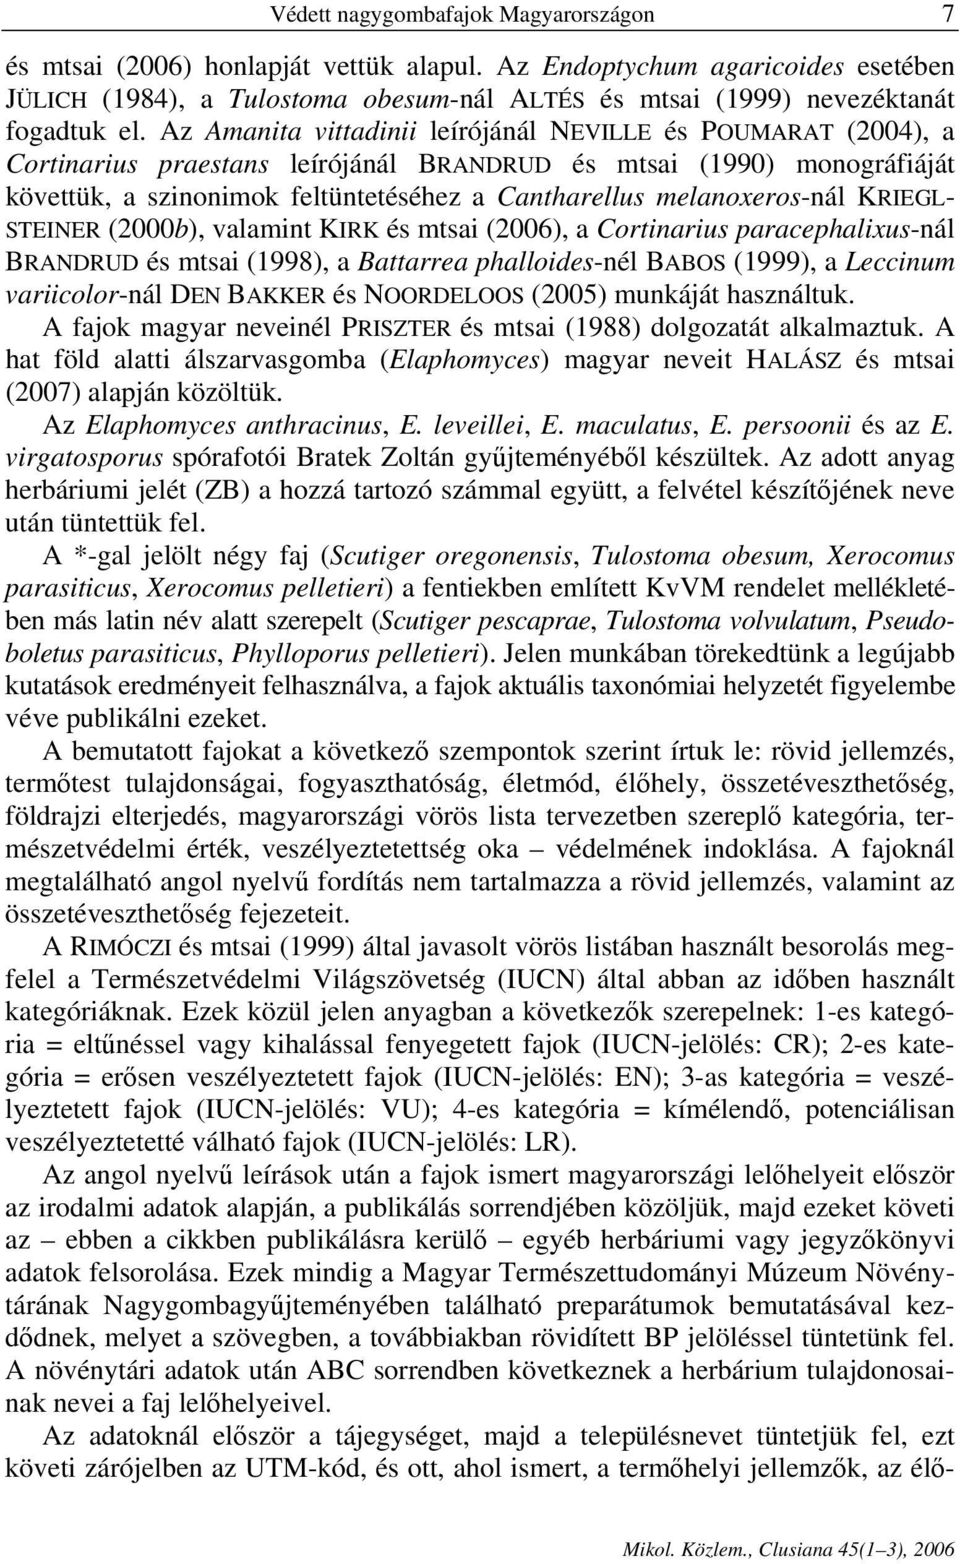 Az Amanita vittadinii leírójánál NEVILLE és POUMARAT (2004), a Cortinarius praestans leírójánál BRANDRUD és mtsai (1990) monográfiáját követtük, a szinonimok feltüntetéséhez a Cantharellus